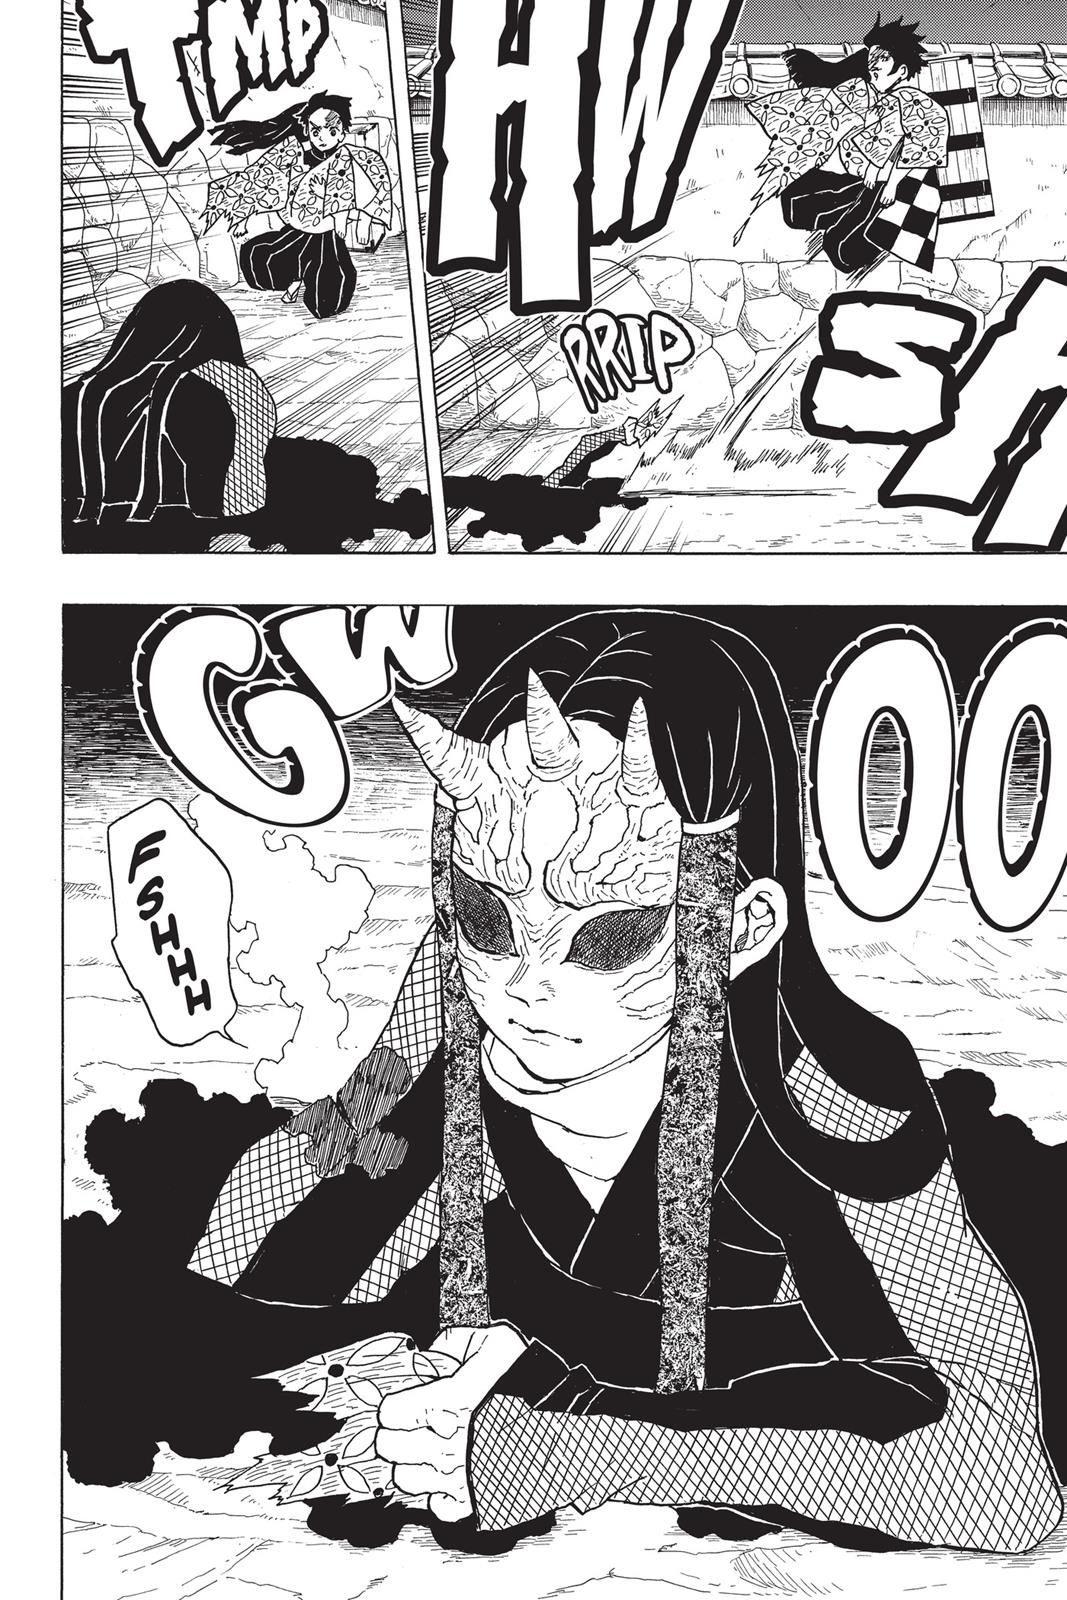 Demon Slayer Manga Manga Chapter - 10 - image 10